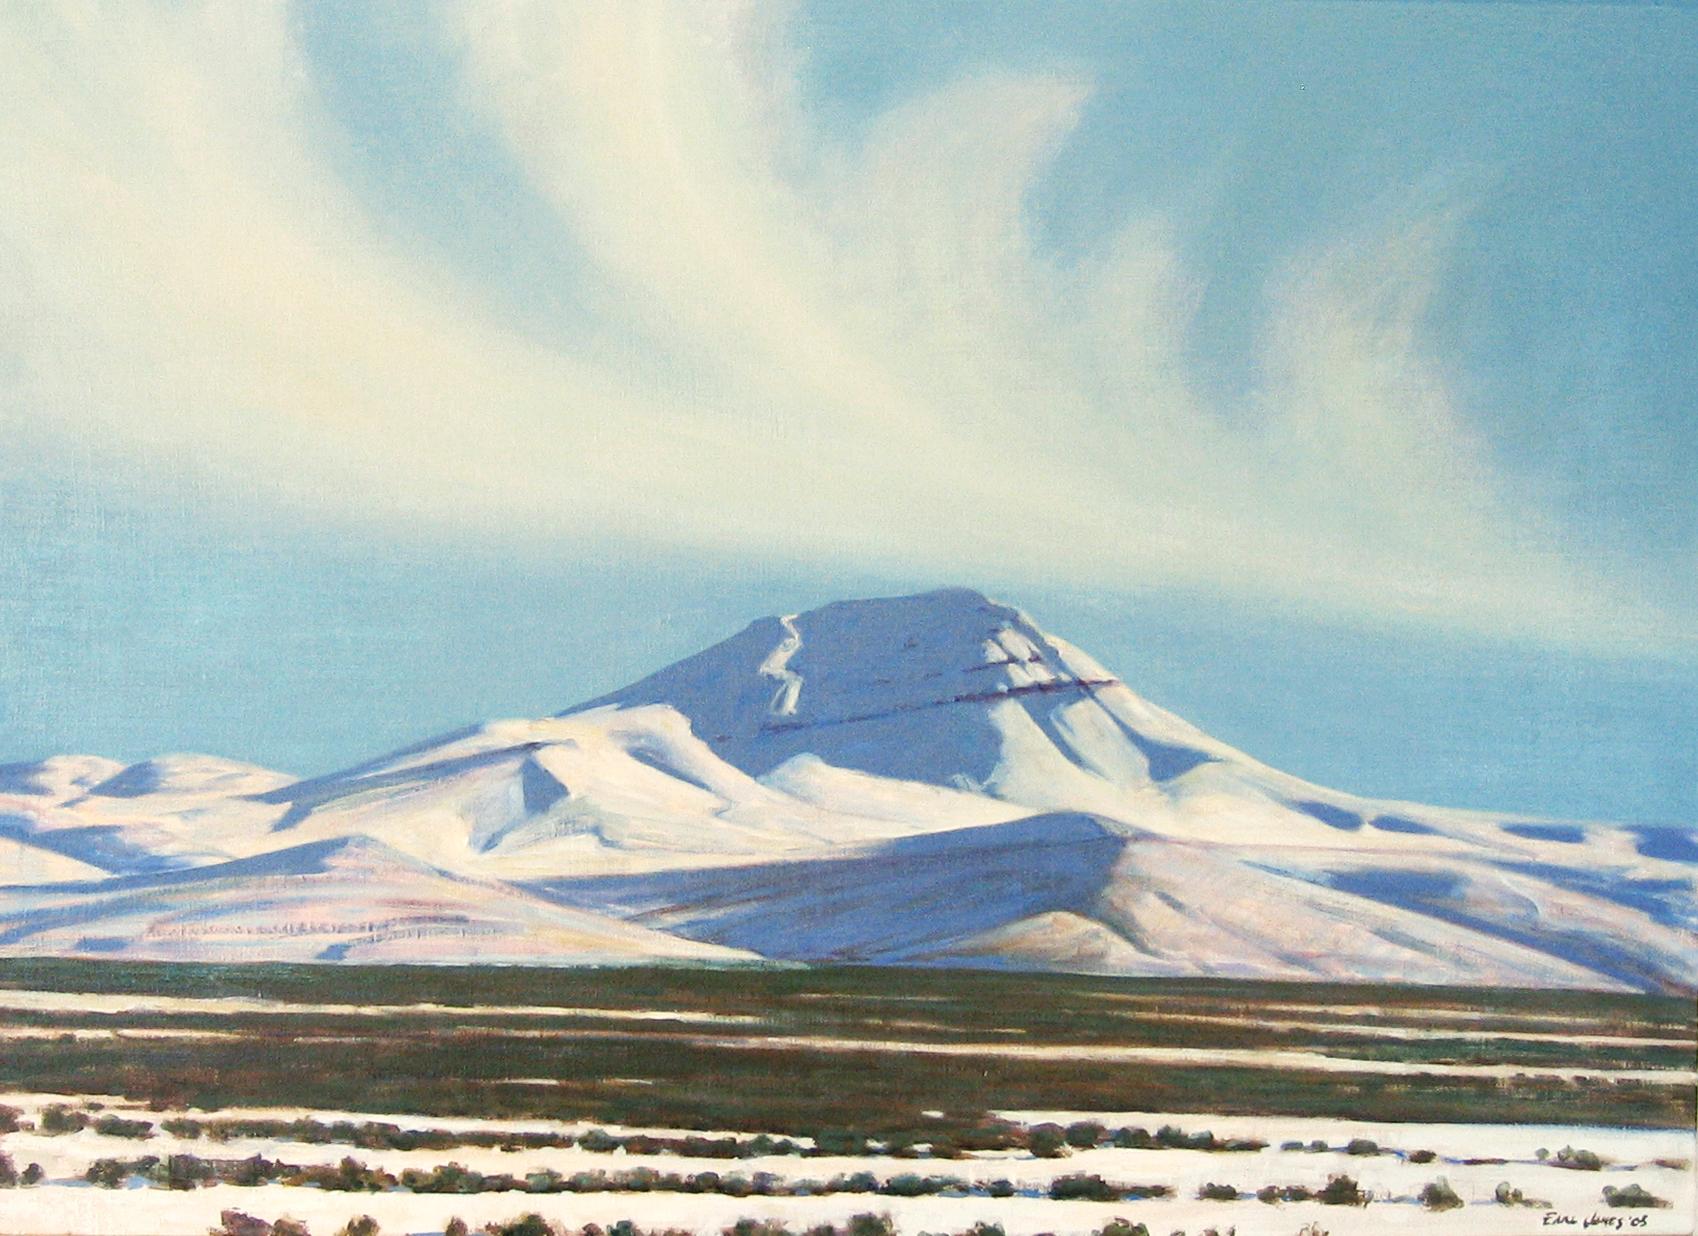 Earl Jones Landscape Painting – Battle Mountain, Nevada